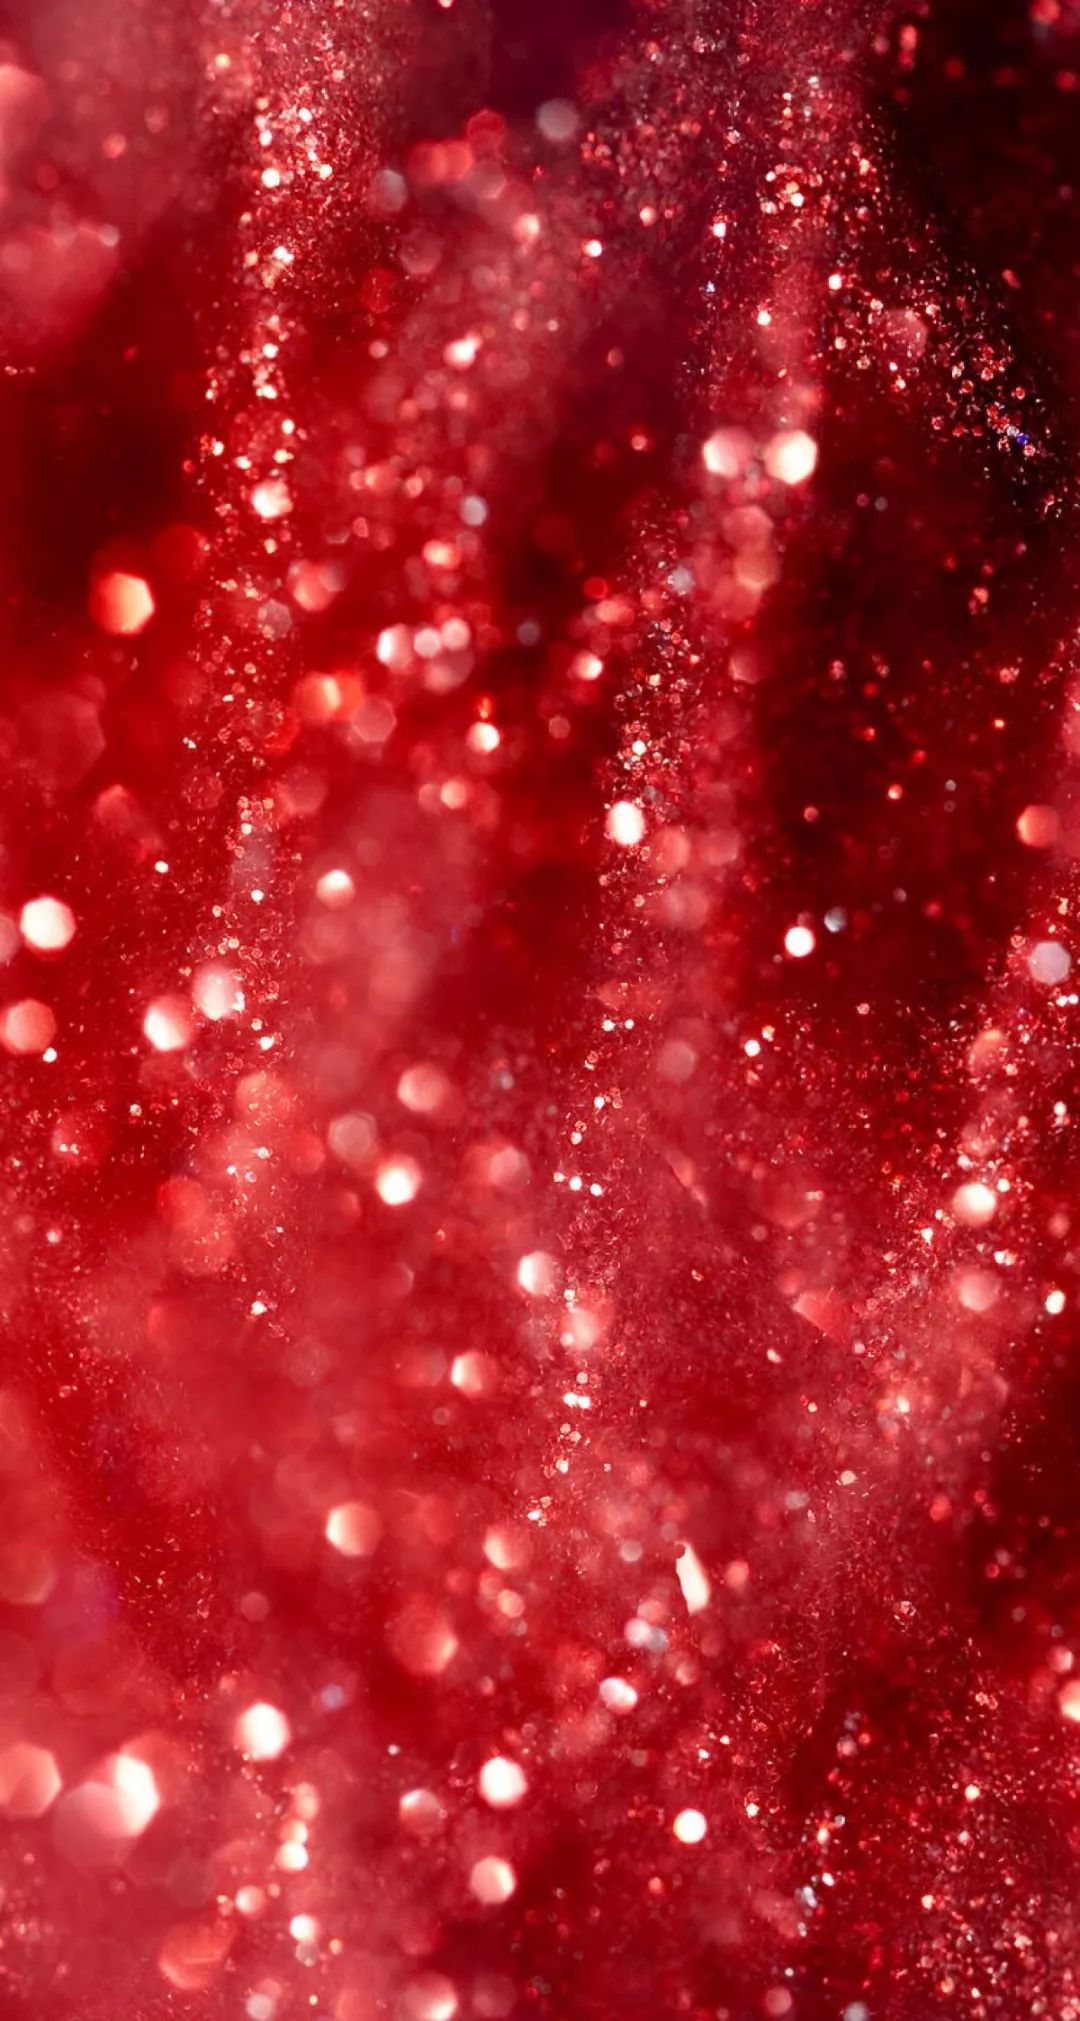 红色系壁纸合集丨鲜艳浓烈的美好!